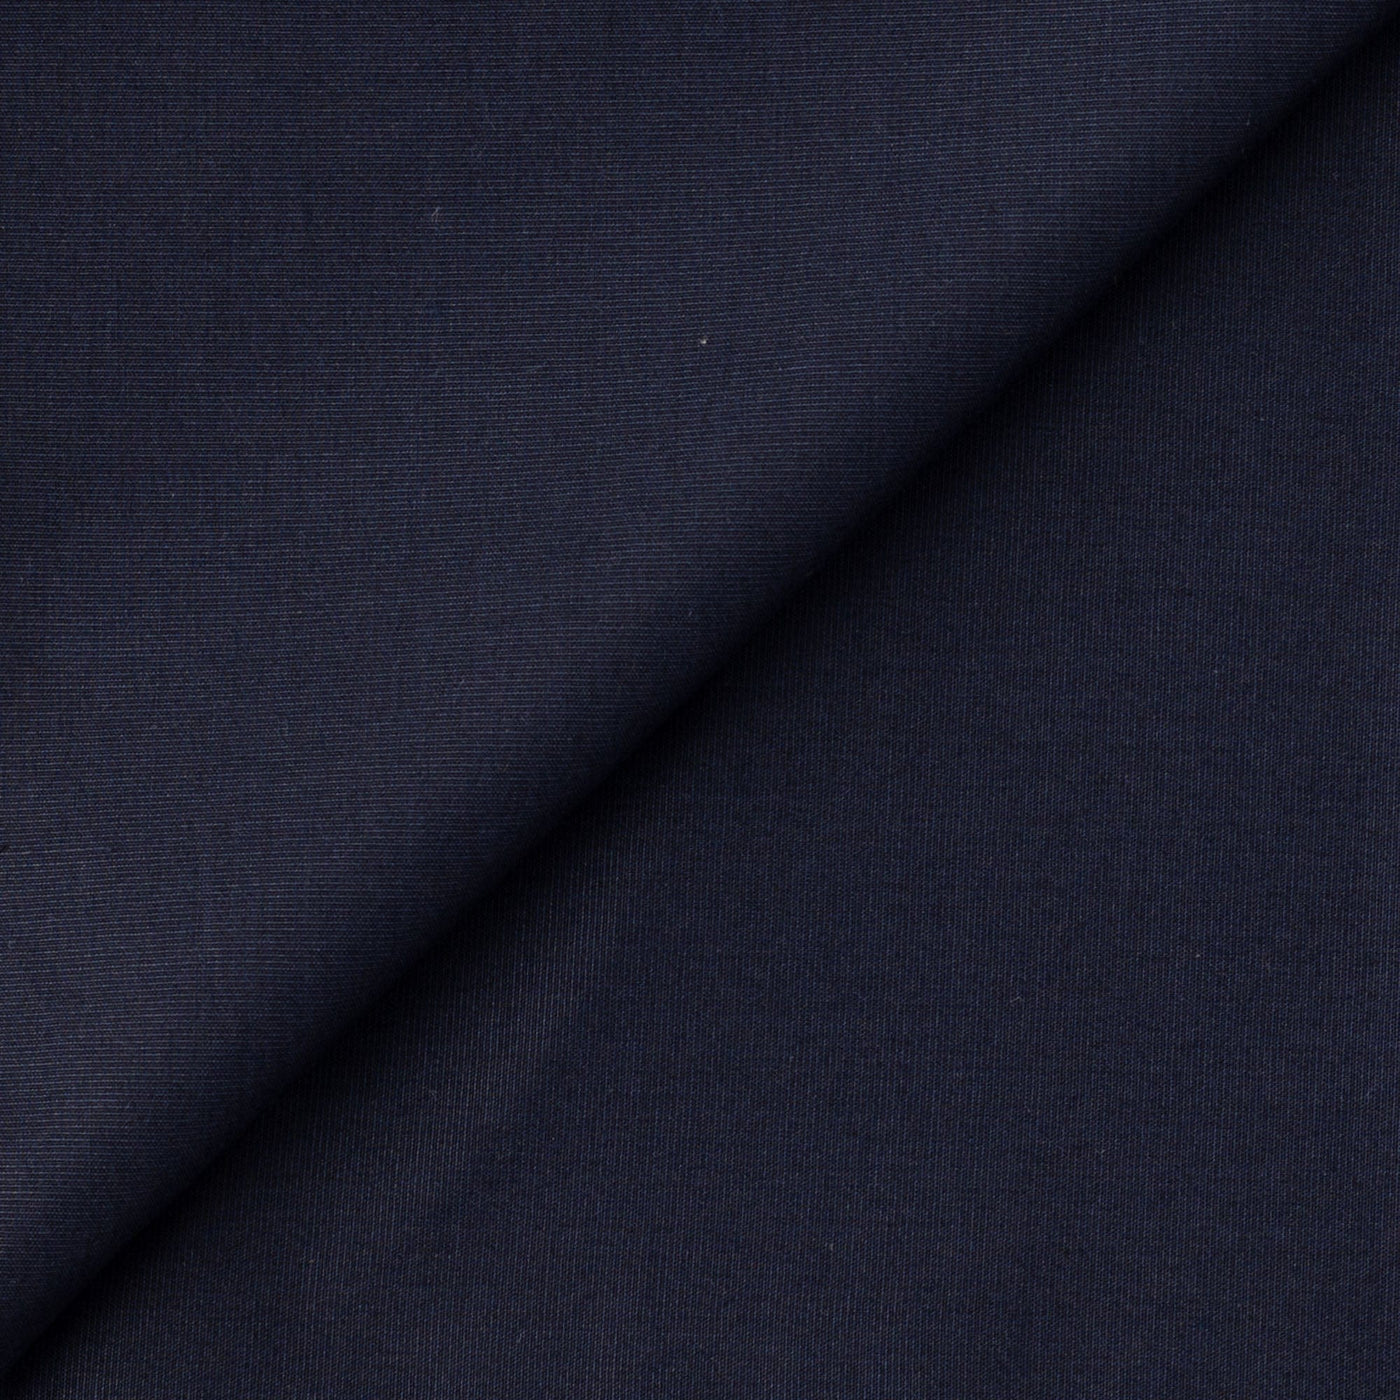 Fabric Pandit Cut Piece 0.50M (CUT PIECE) Dark Blue Textured Cotton Men's Shirt Fabric (Width 58 inch)